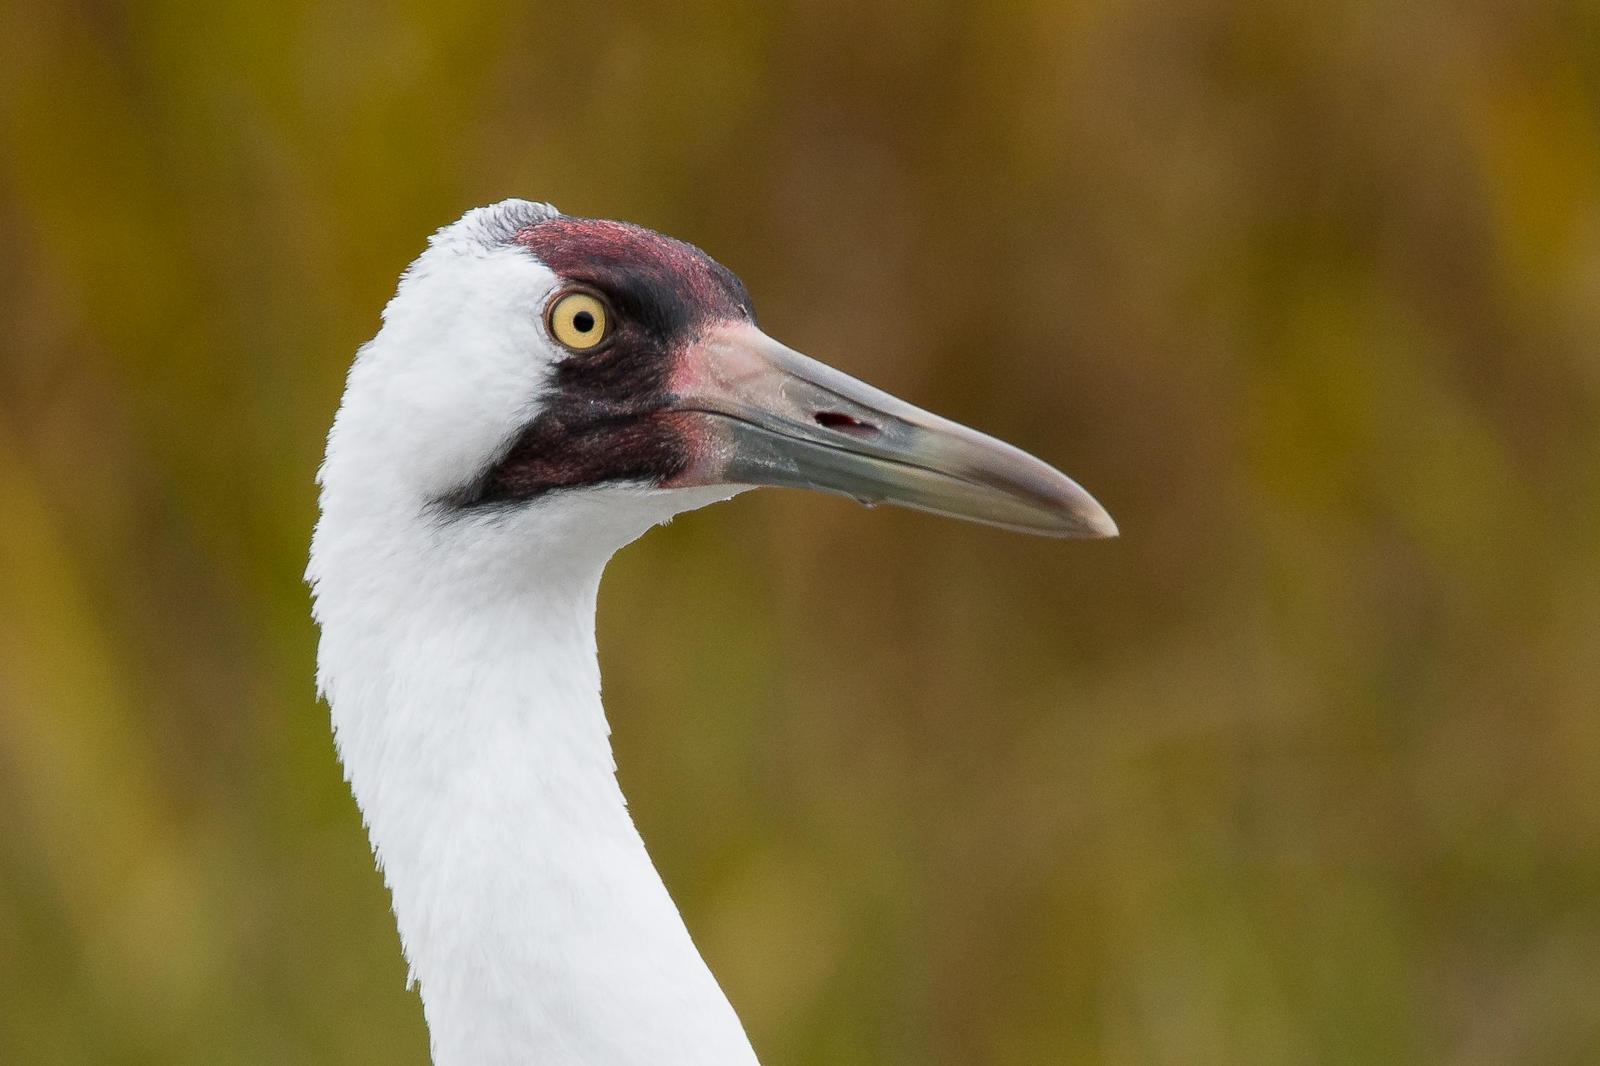 Whooping Crane Photo by Gerald Hoekstra